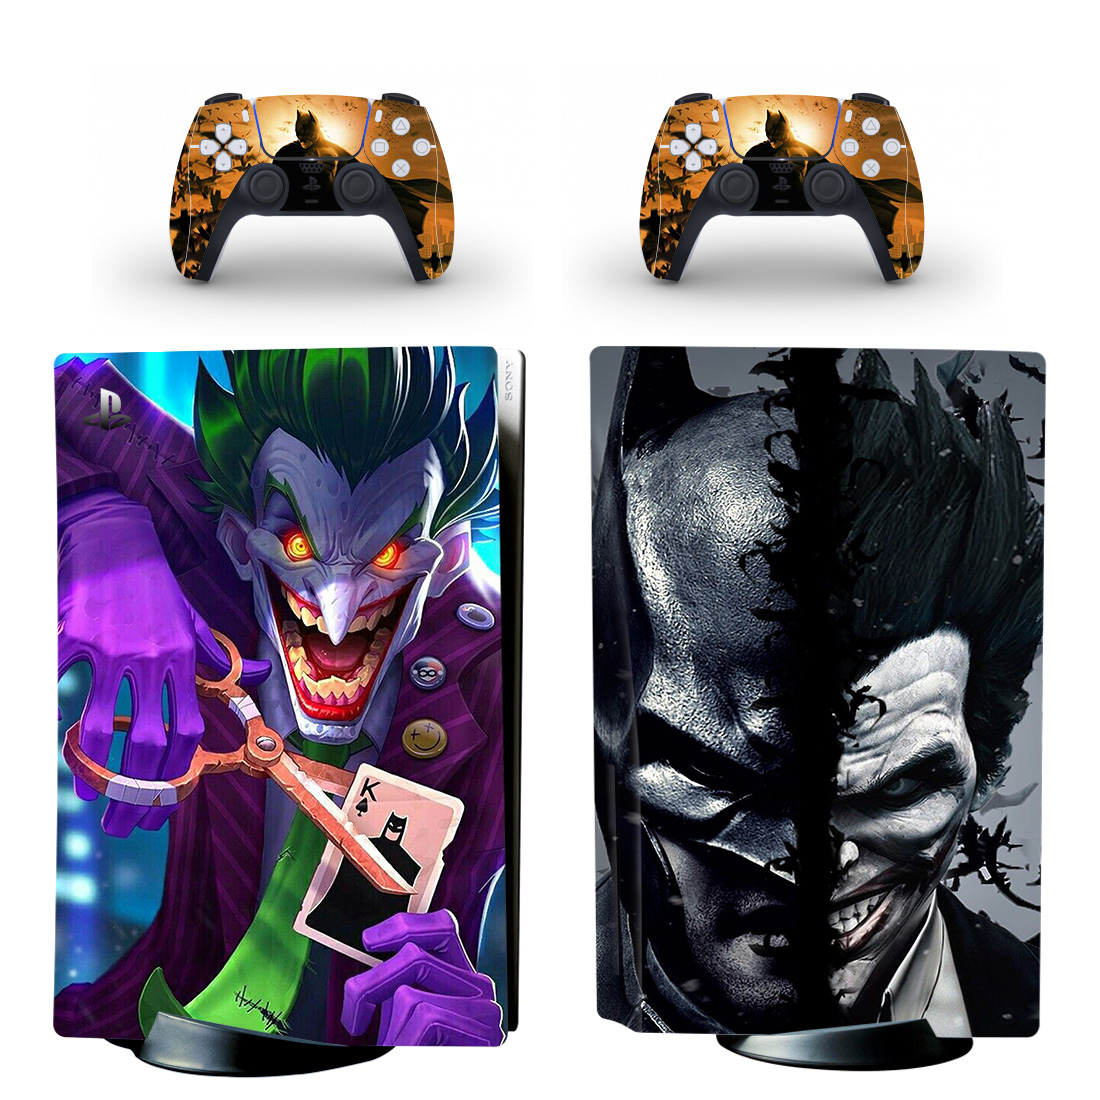 Batman And Joker PS5 Skin Sticker Decal Design 9